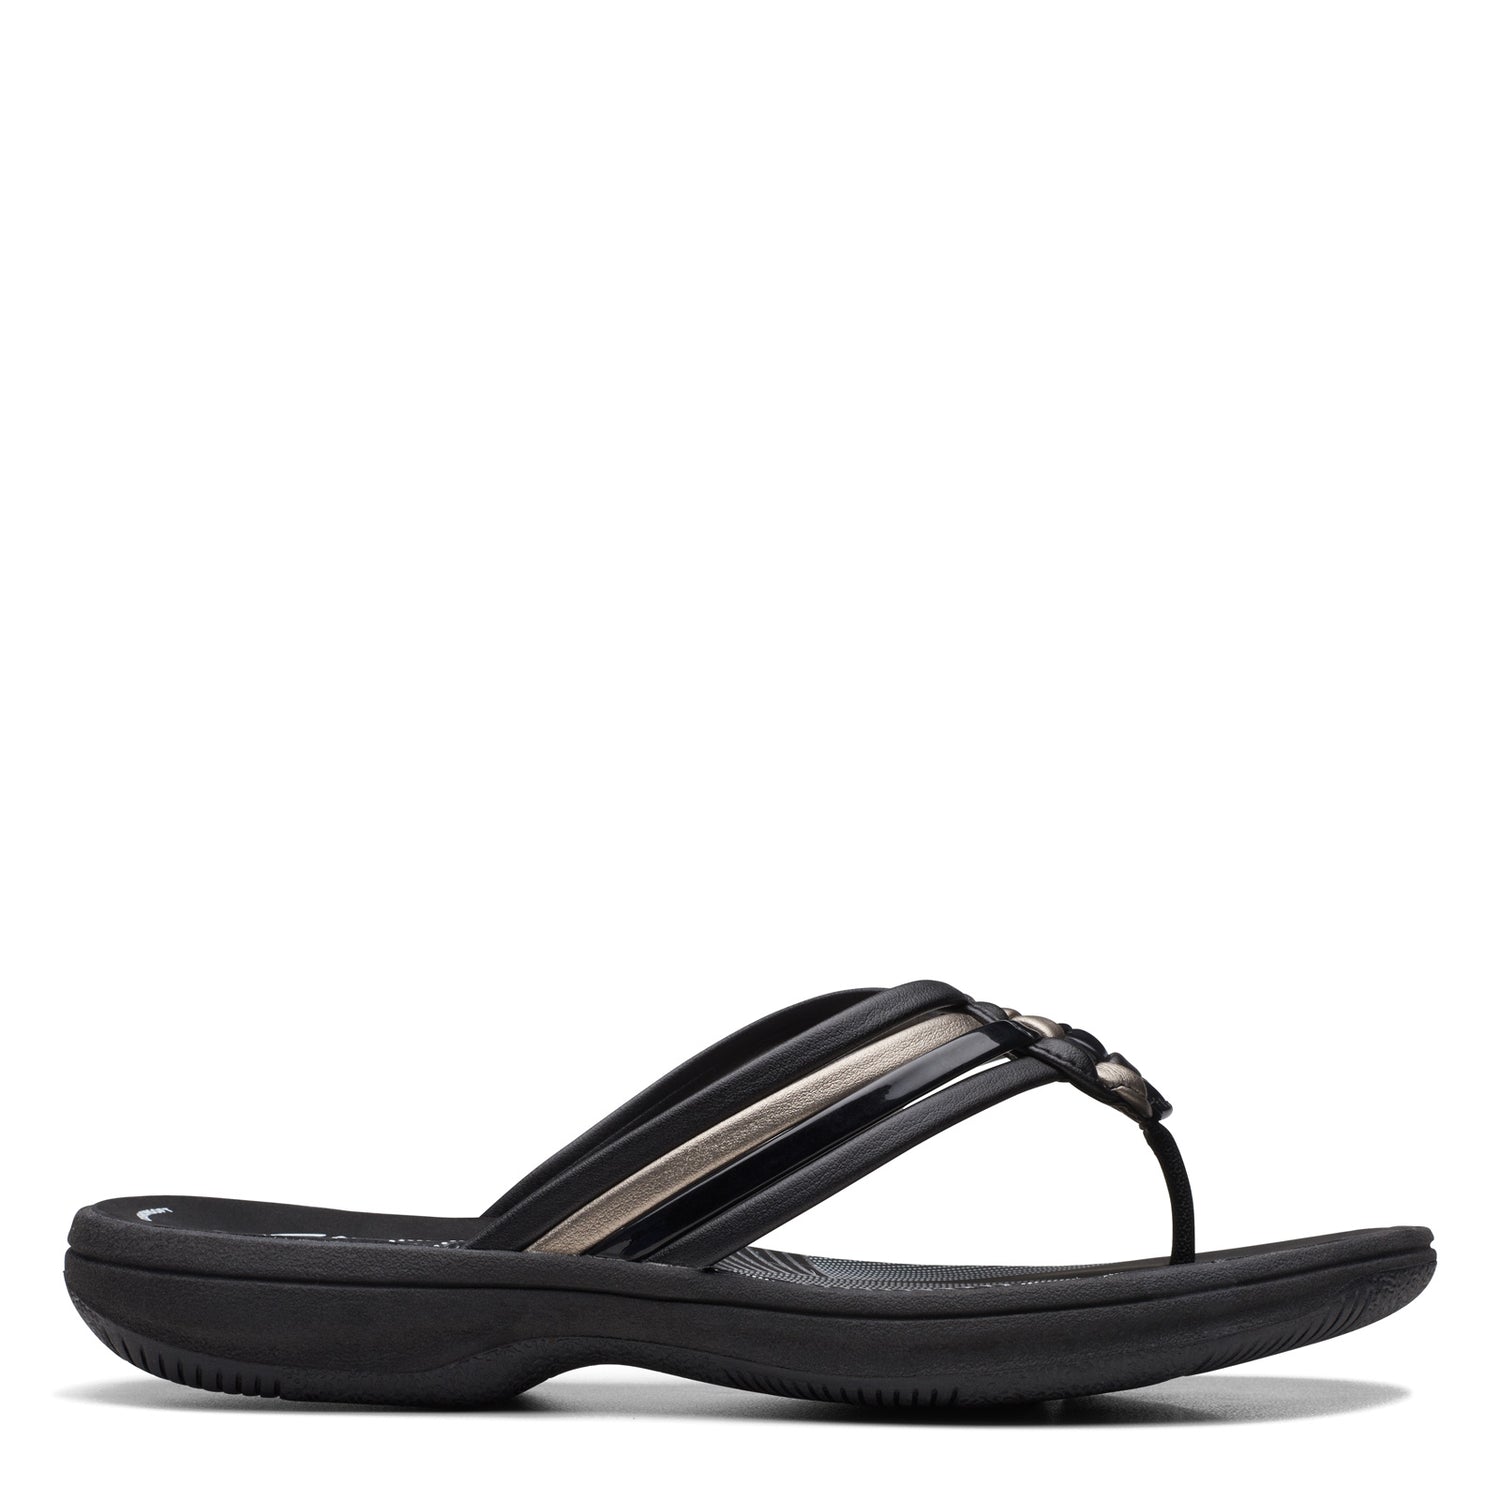 Peltz Shoes  Women's Clarks Breeze Coral Sandal Black Combi 26171935